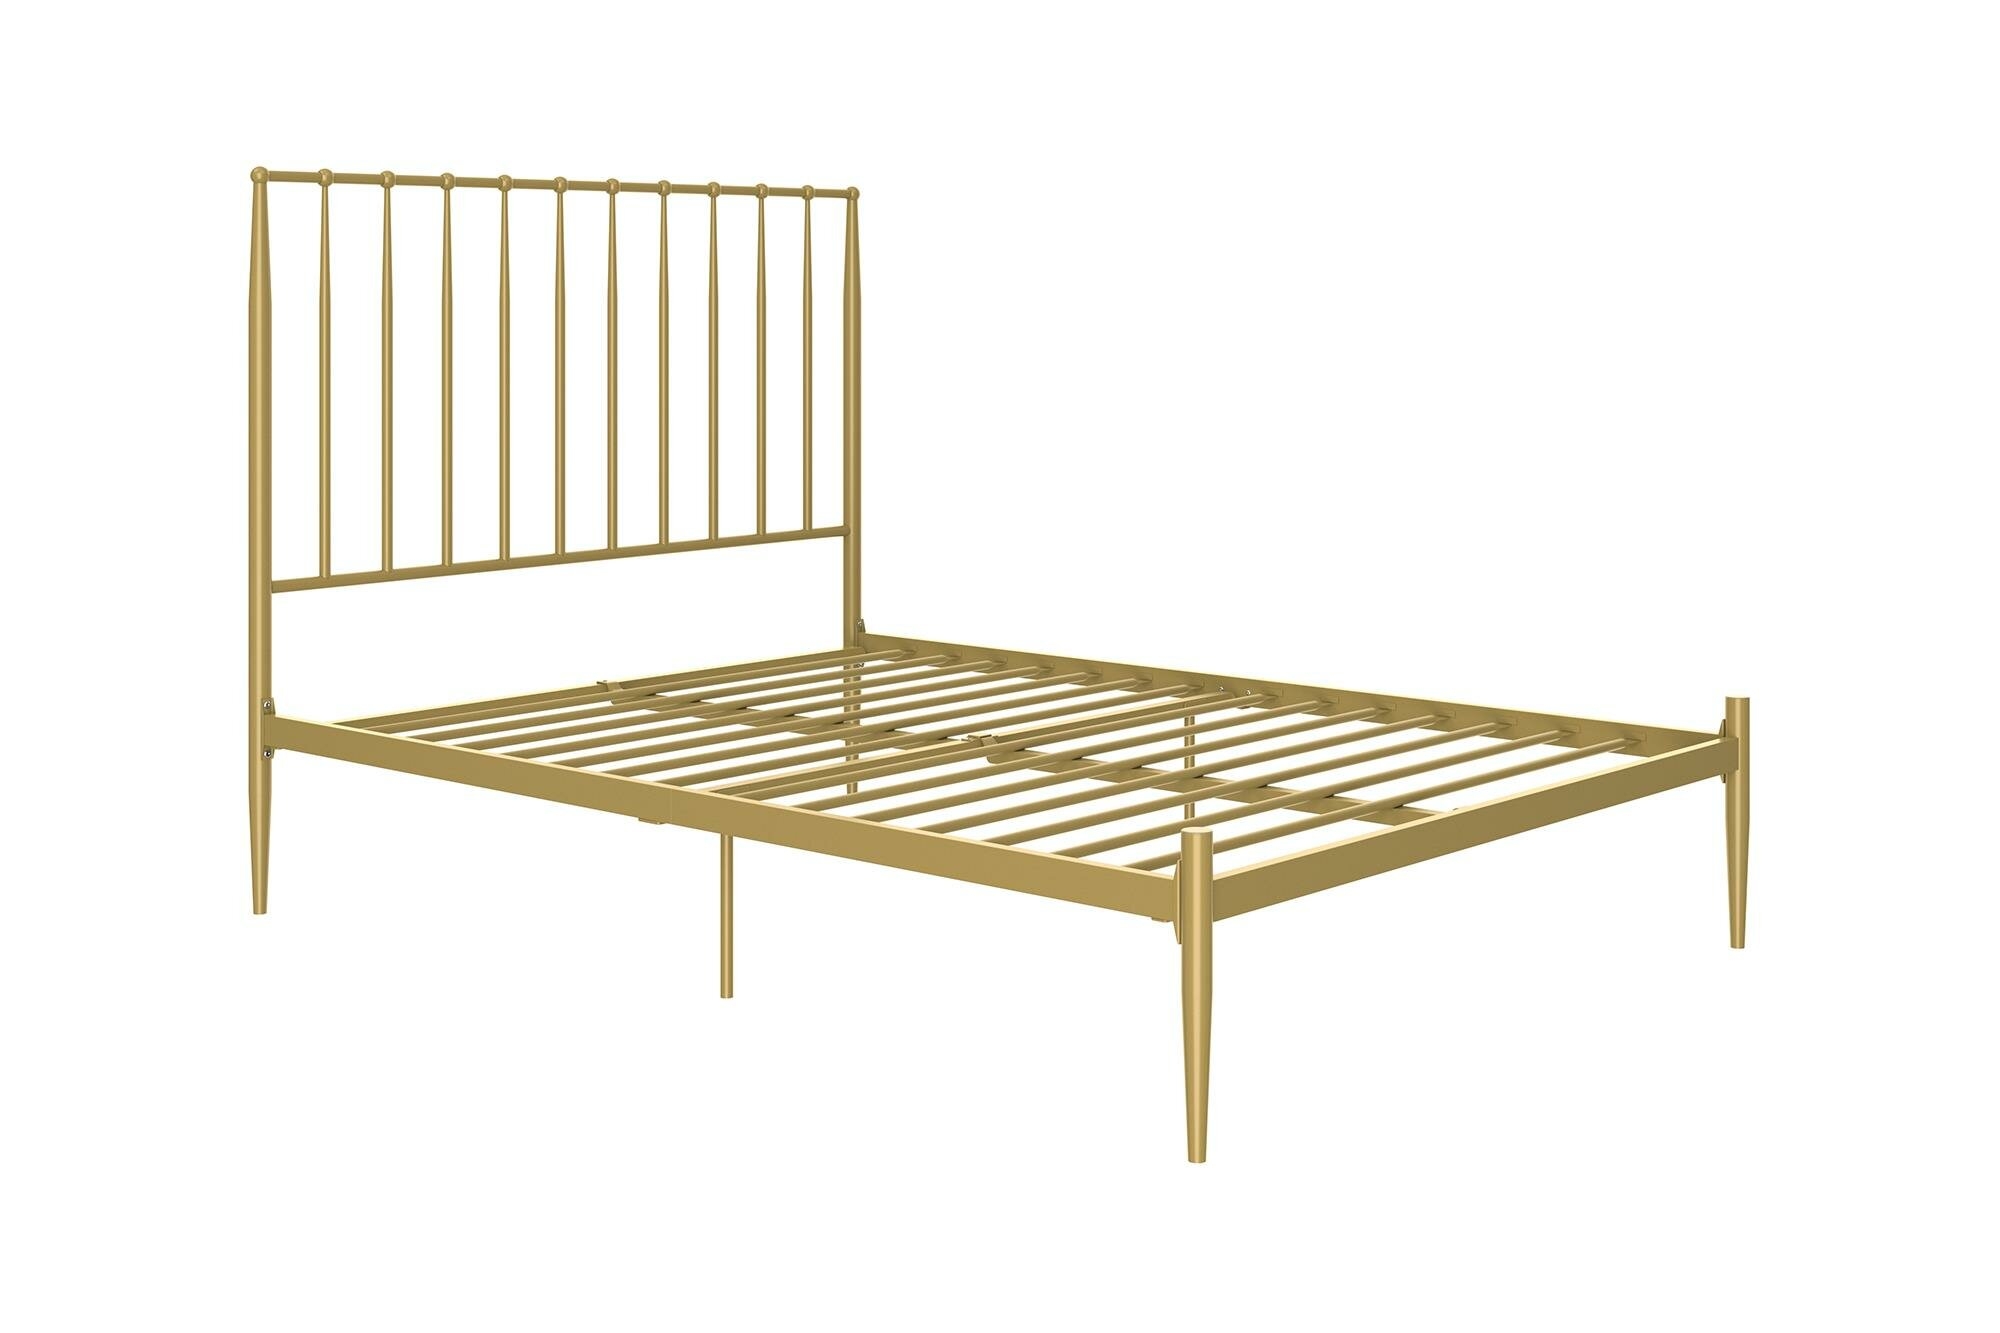 Gold Bed Frame Visualhunt, Gold Brushed Steel Bed Frame